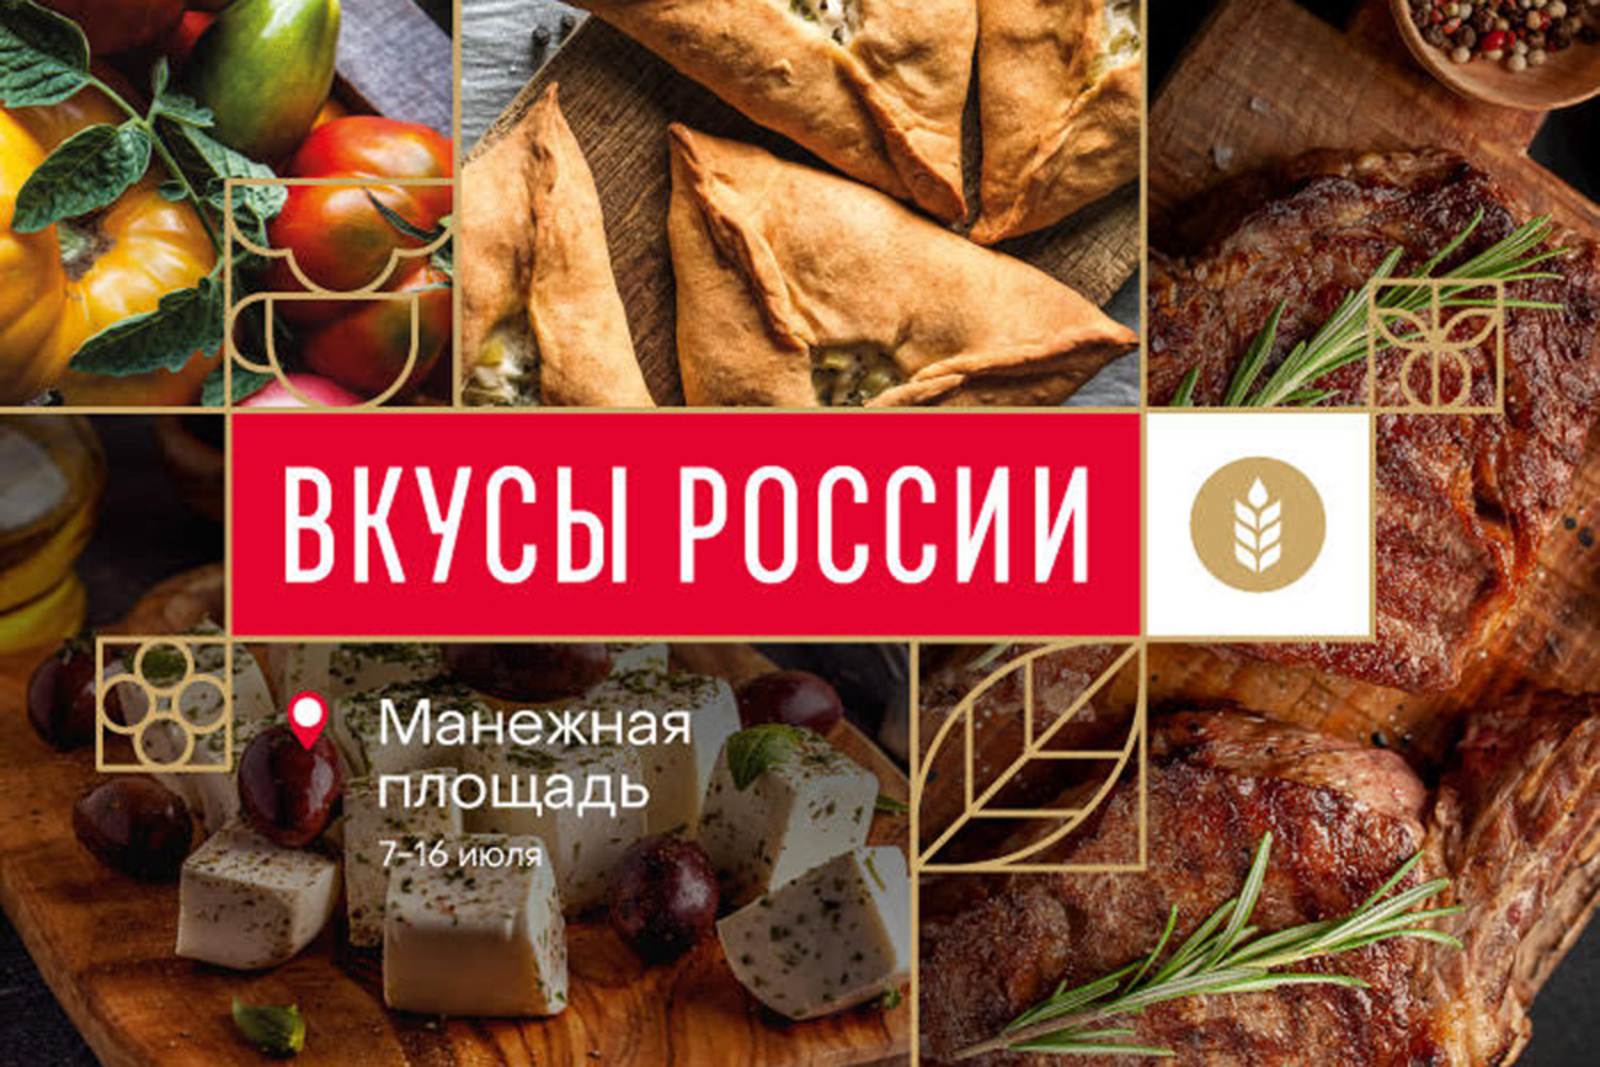 На гастрономическом фестивале «Вкусы России» приготовят блюда национальных туристических маршрутов